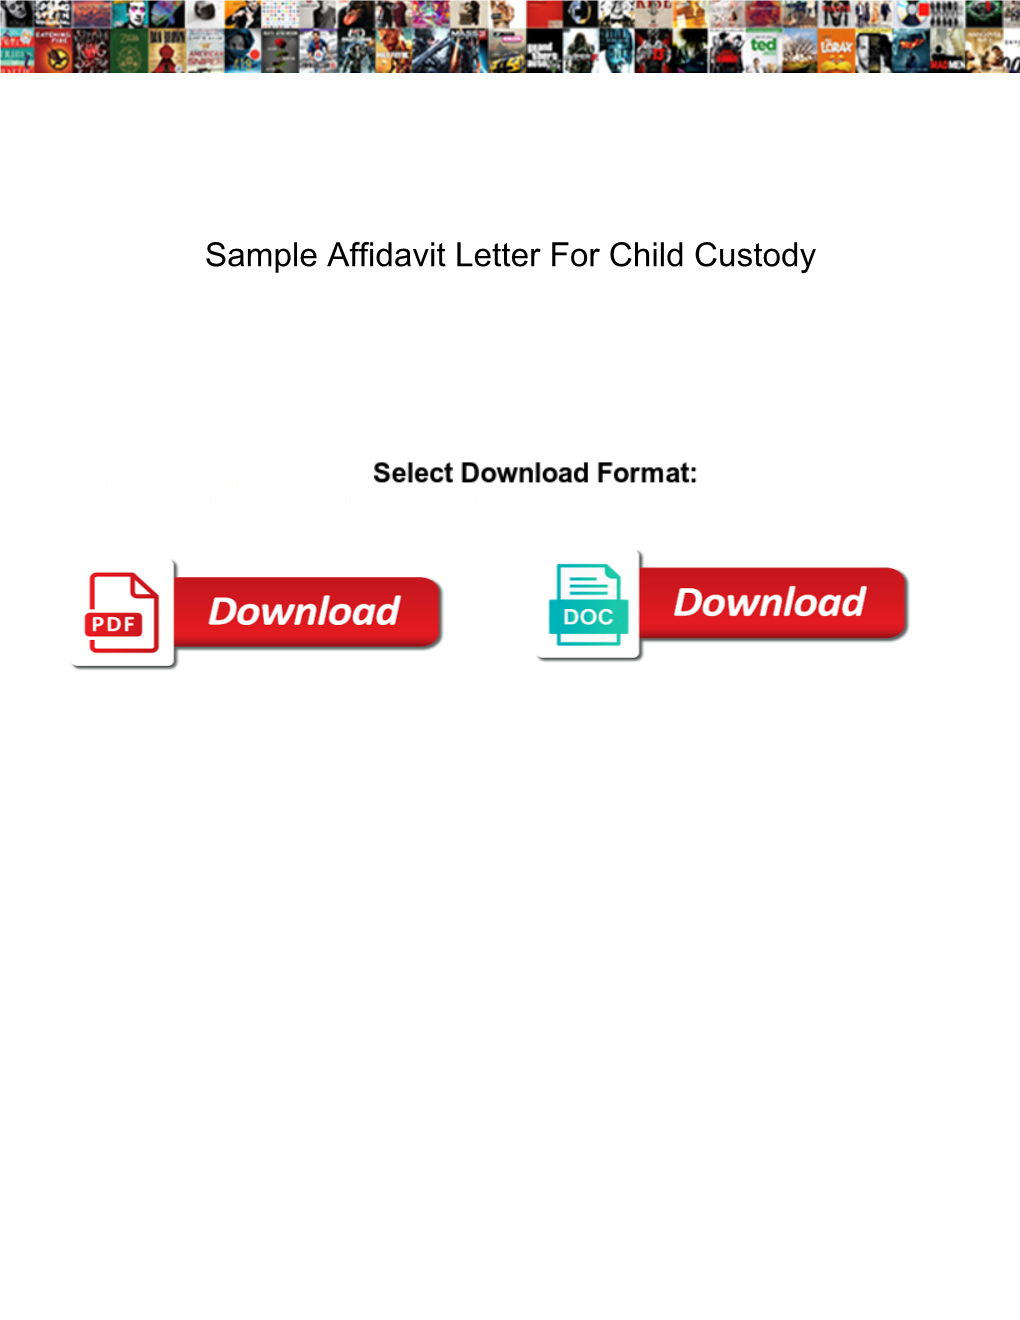 Sample Affidavit Letter for Child Custody